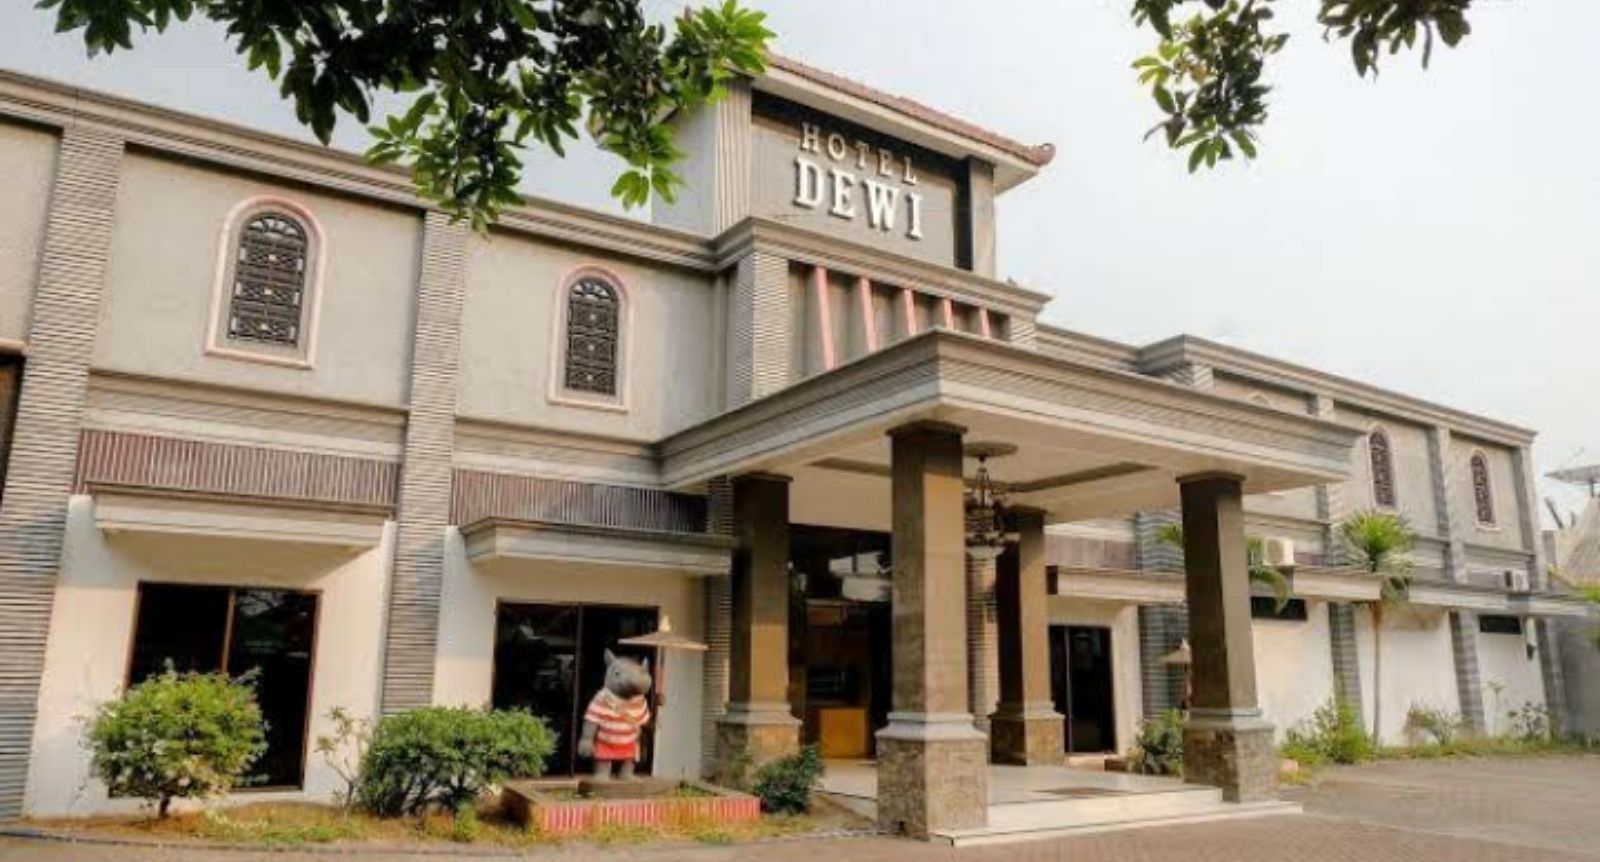 Hotel Dewi